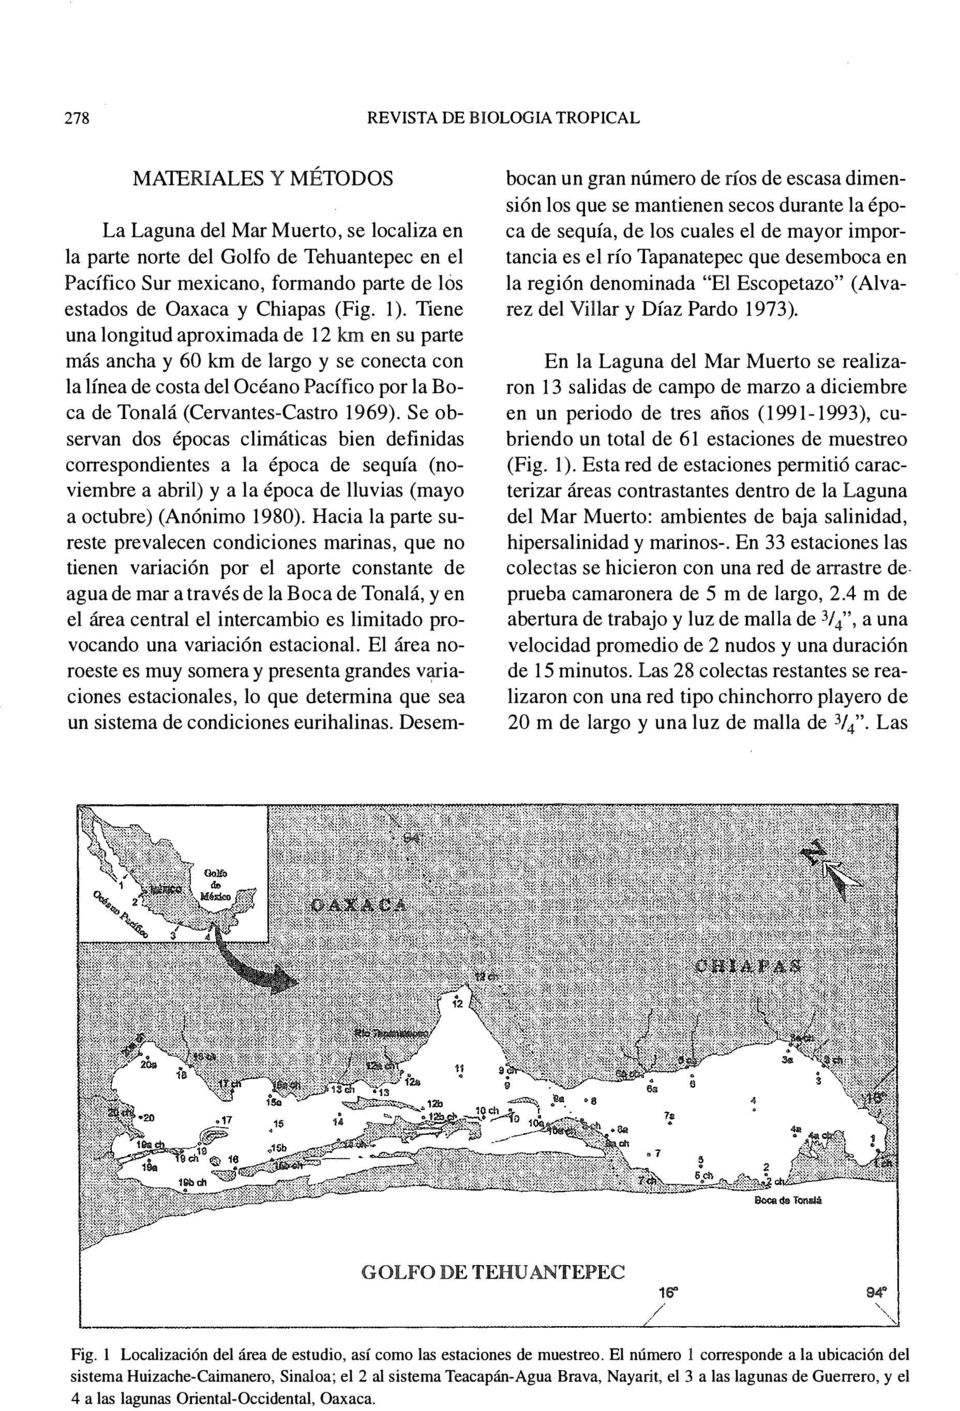 Tiene una longitud aproimada de 12 km en su parte más ancha y 60 km de largo y se conecta con la línea de costa del Océano Pacífico por la Boca de Tonalá (Cervantes-Castro 1969).